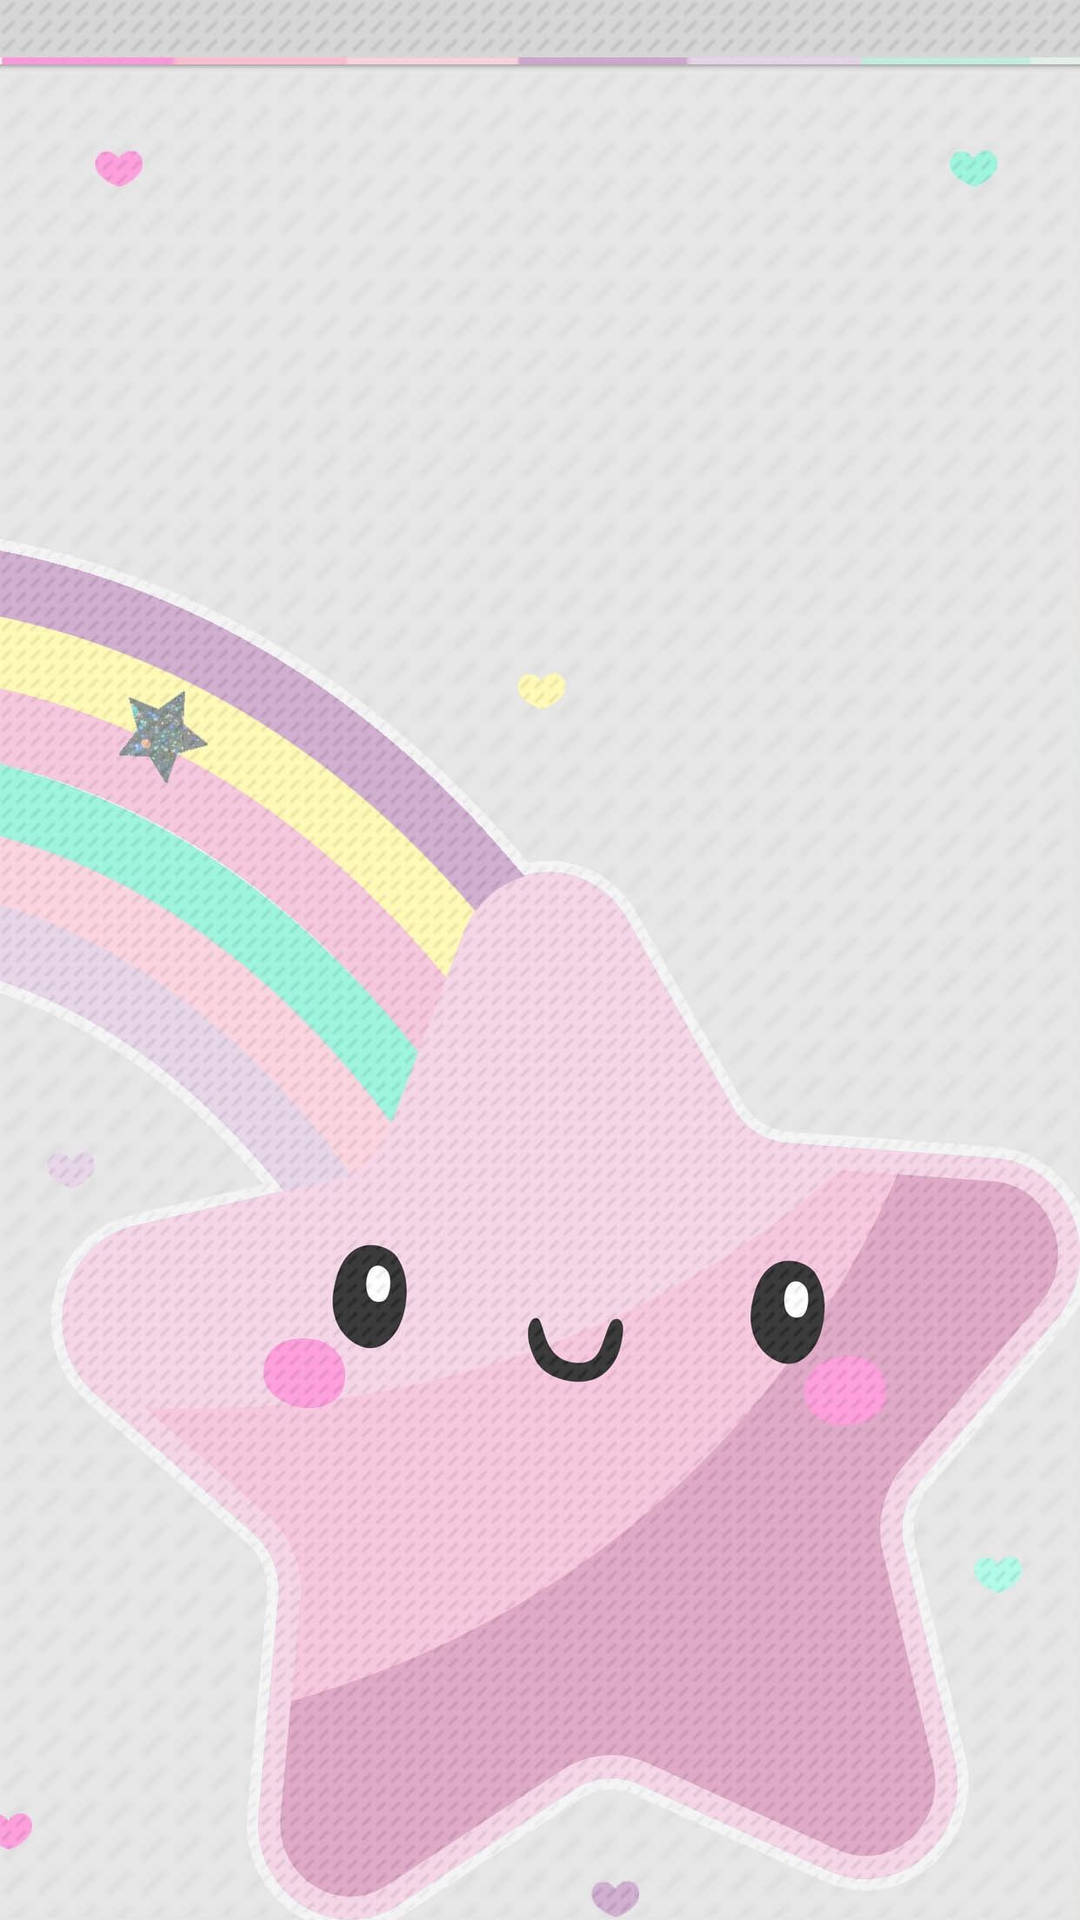 Rainbow Star Cute Iphone Lock Screen